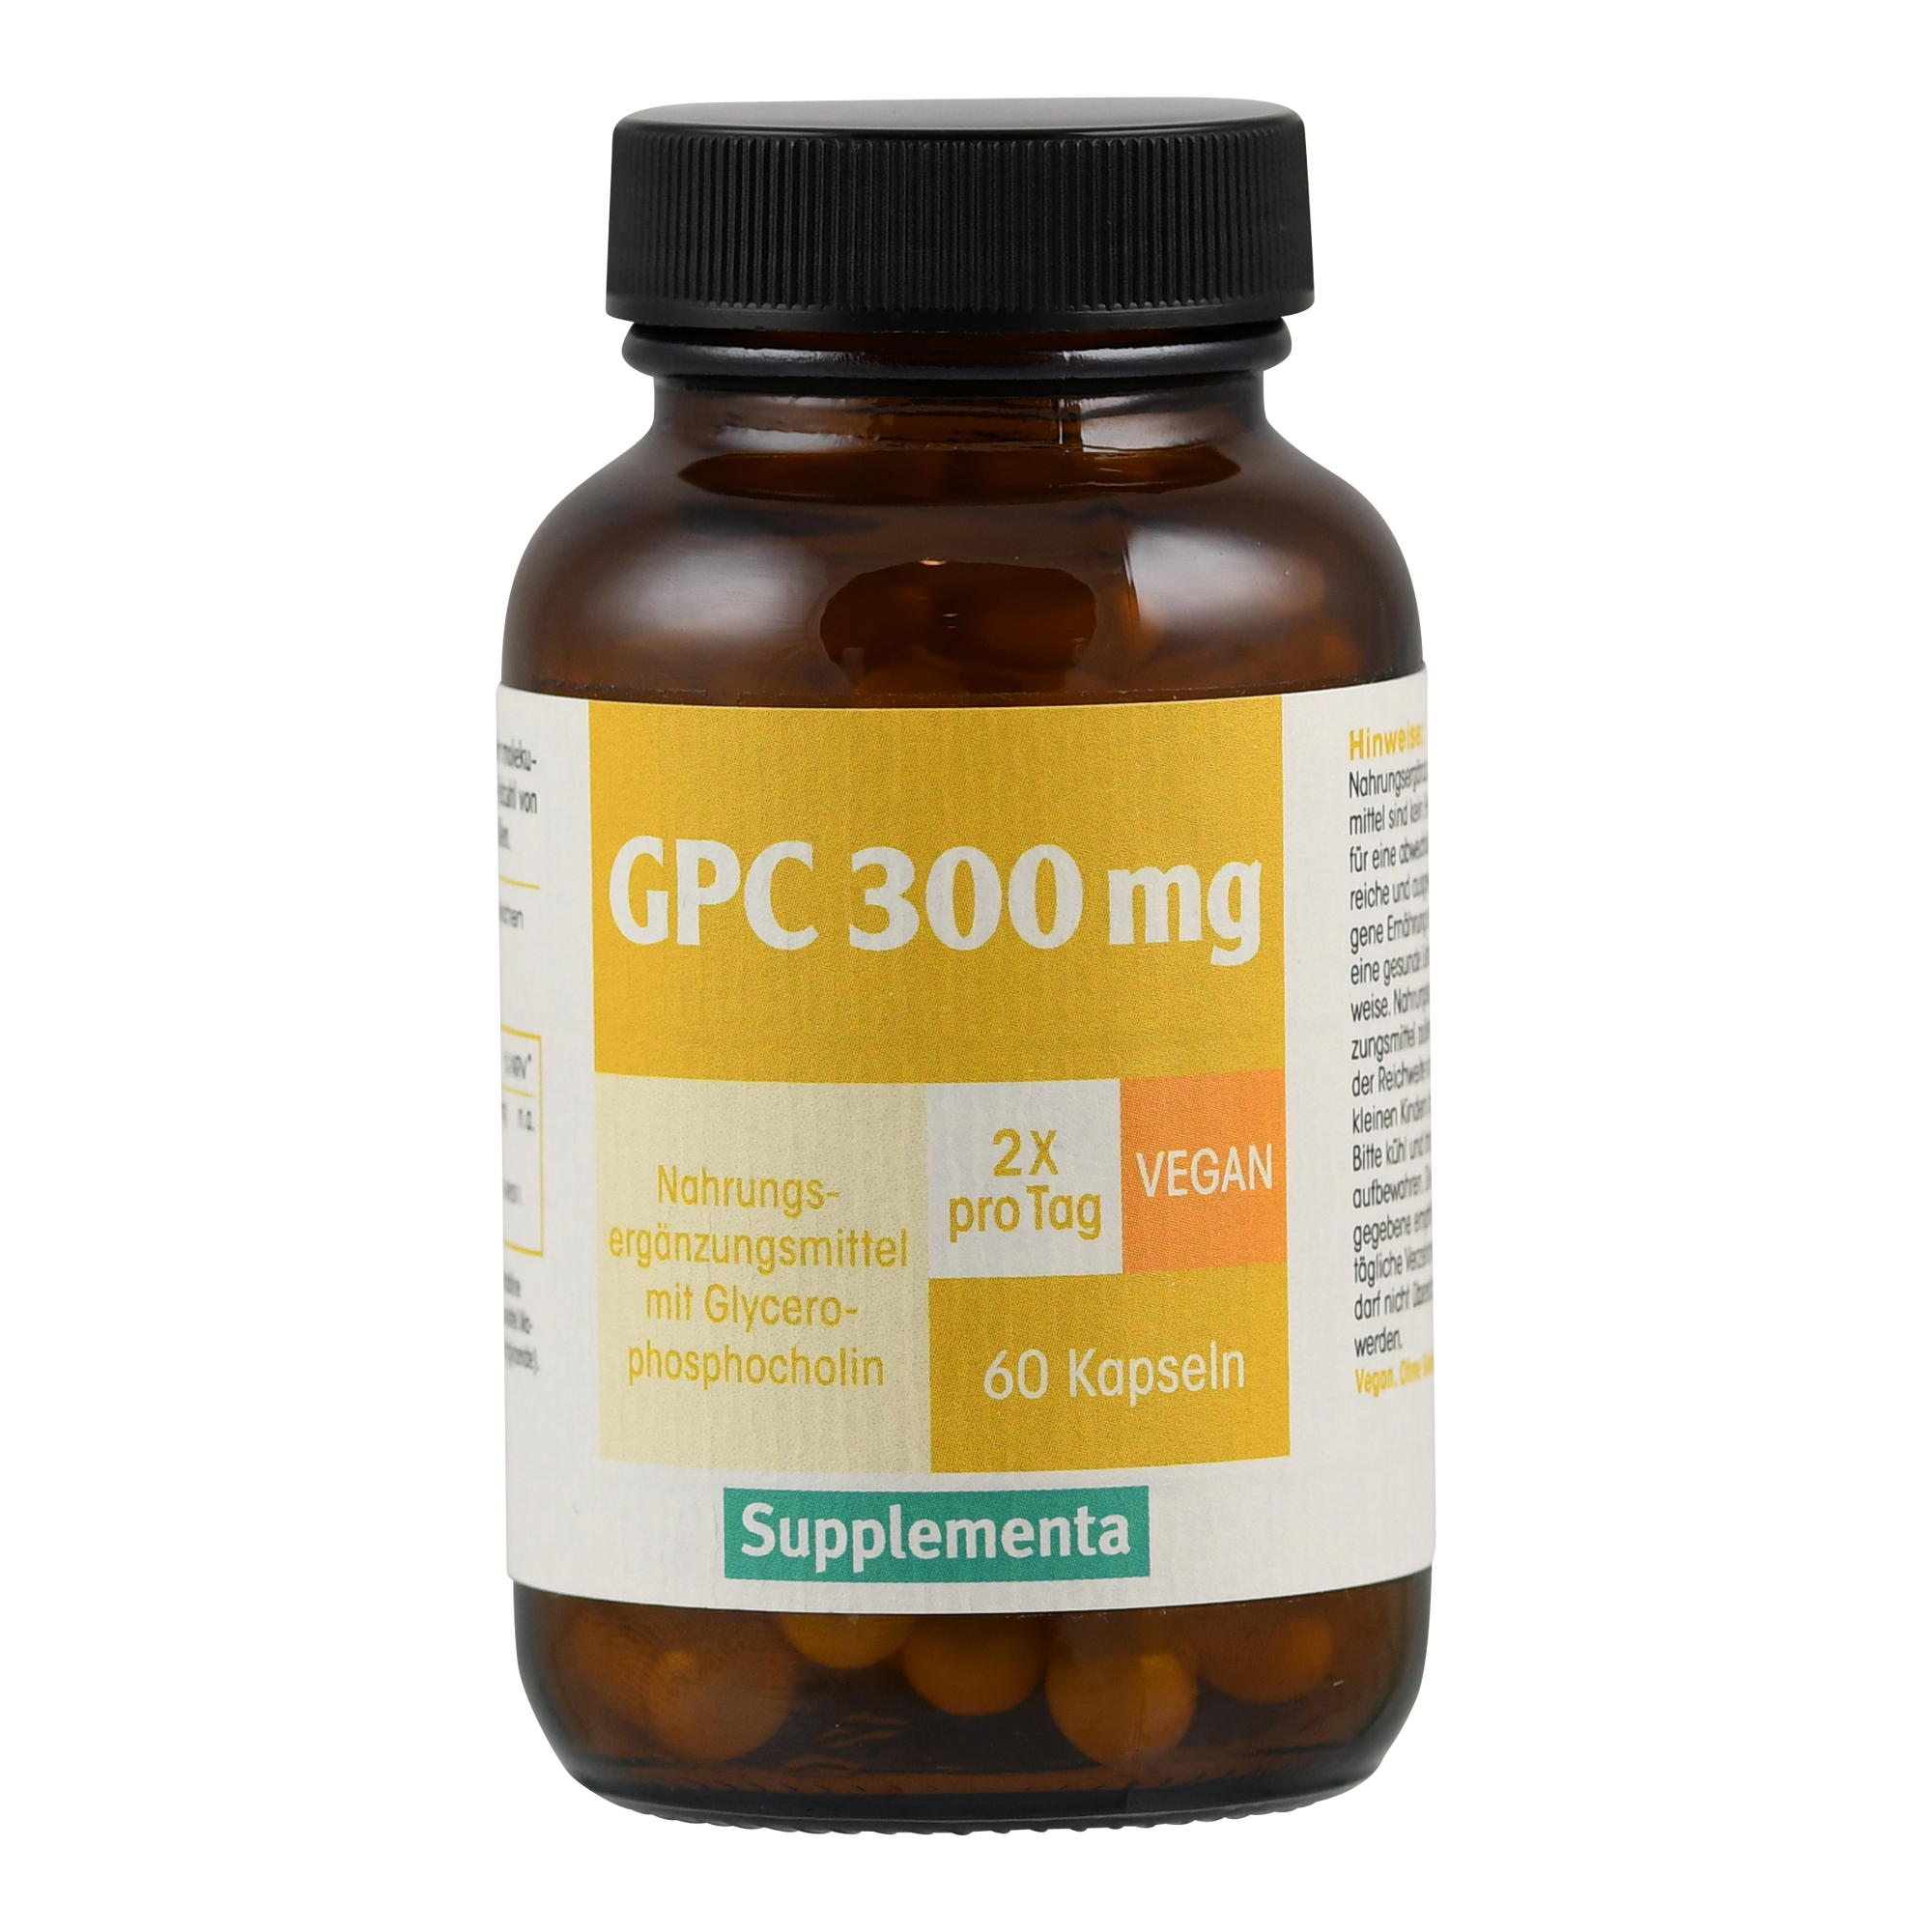 GPC (300mg) Supplementa von Supplementa.